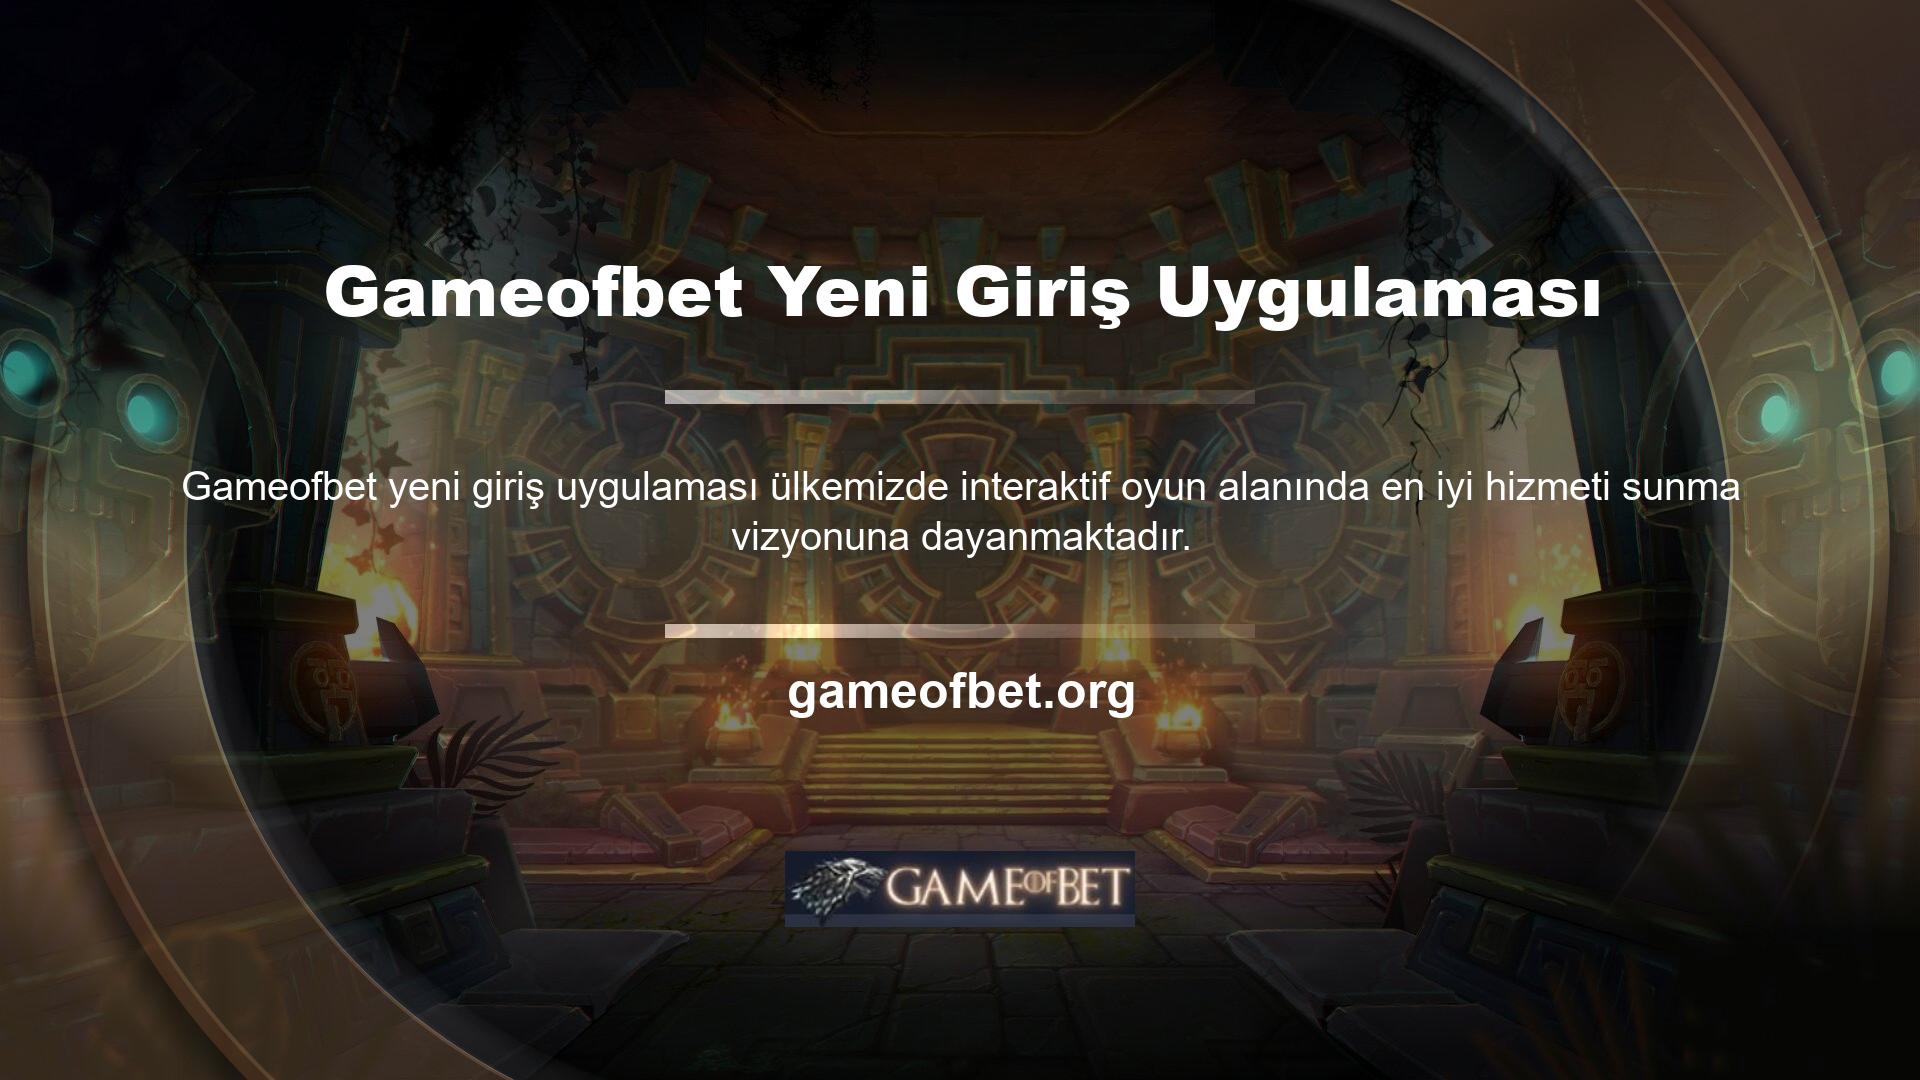 Gameofbet oyun sitesi kurulduğu günden bu yana, kullanıcıları arasında ve kullanıcılarının çoğunluğu arasında büyük bir popülerliğe sahip olmuştur